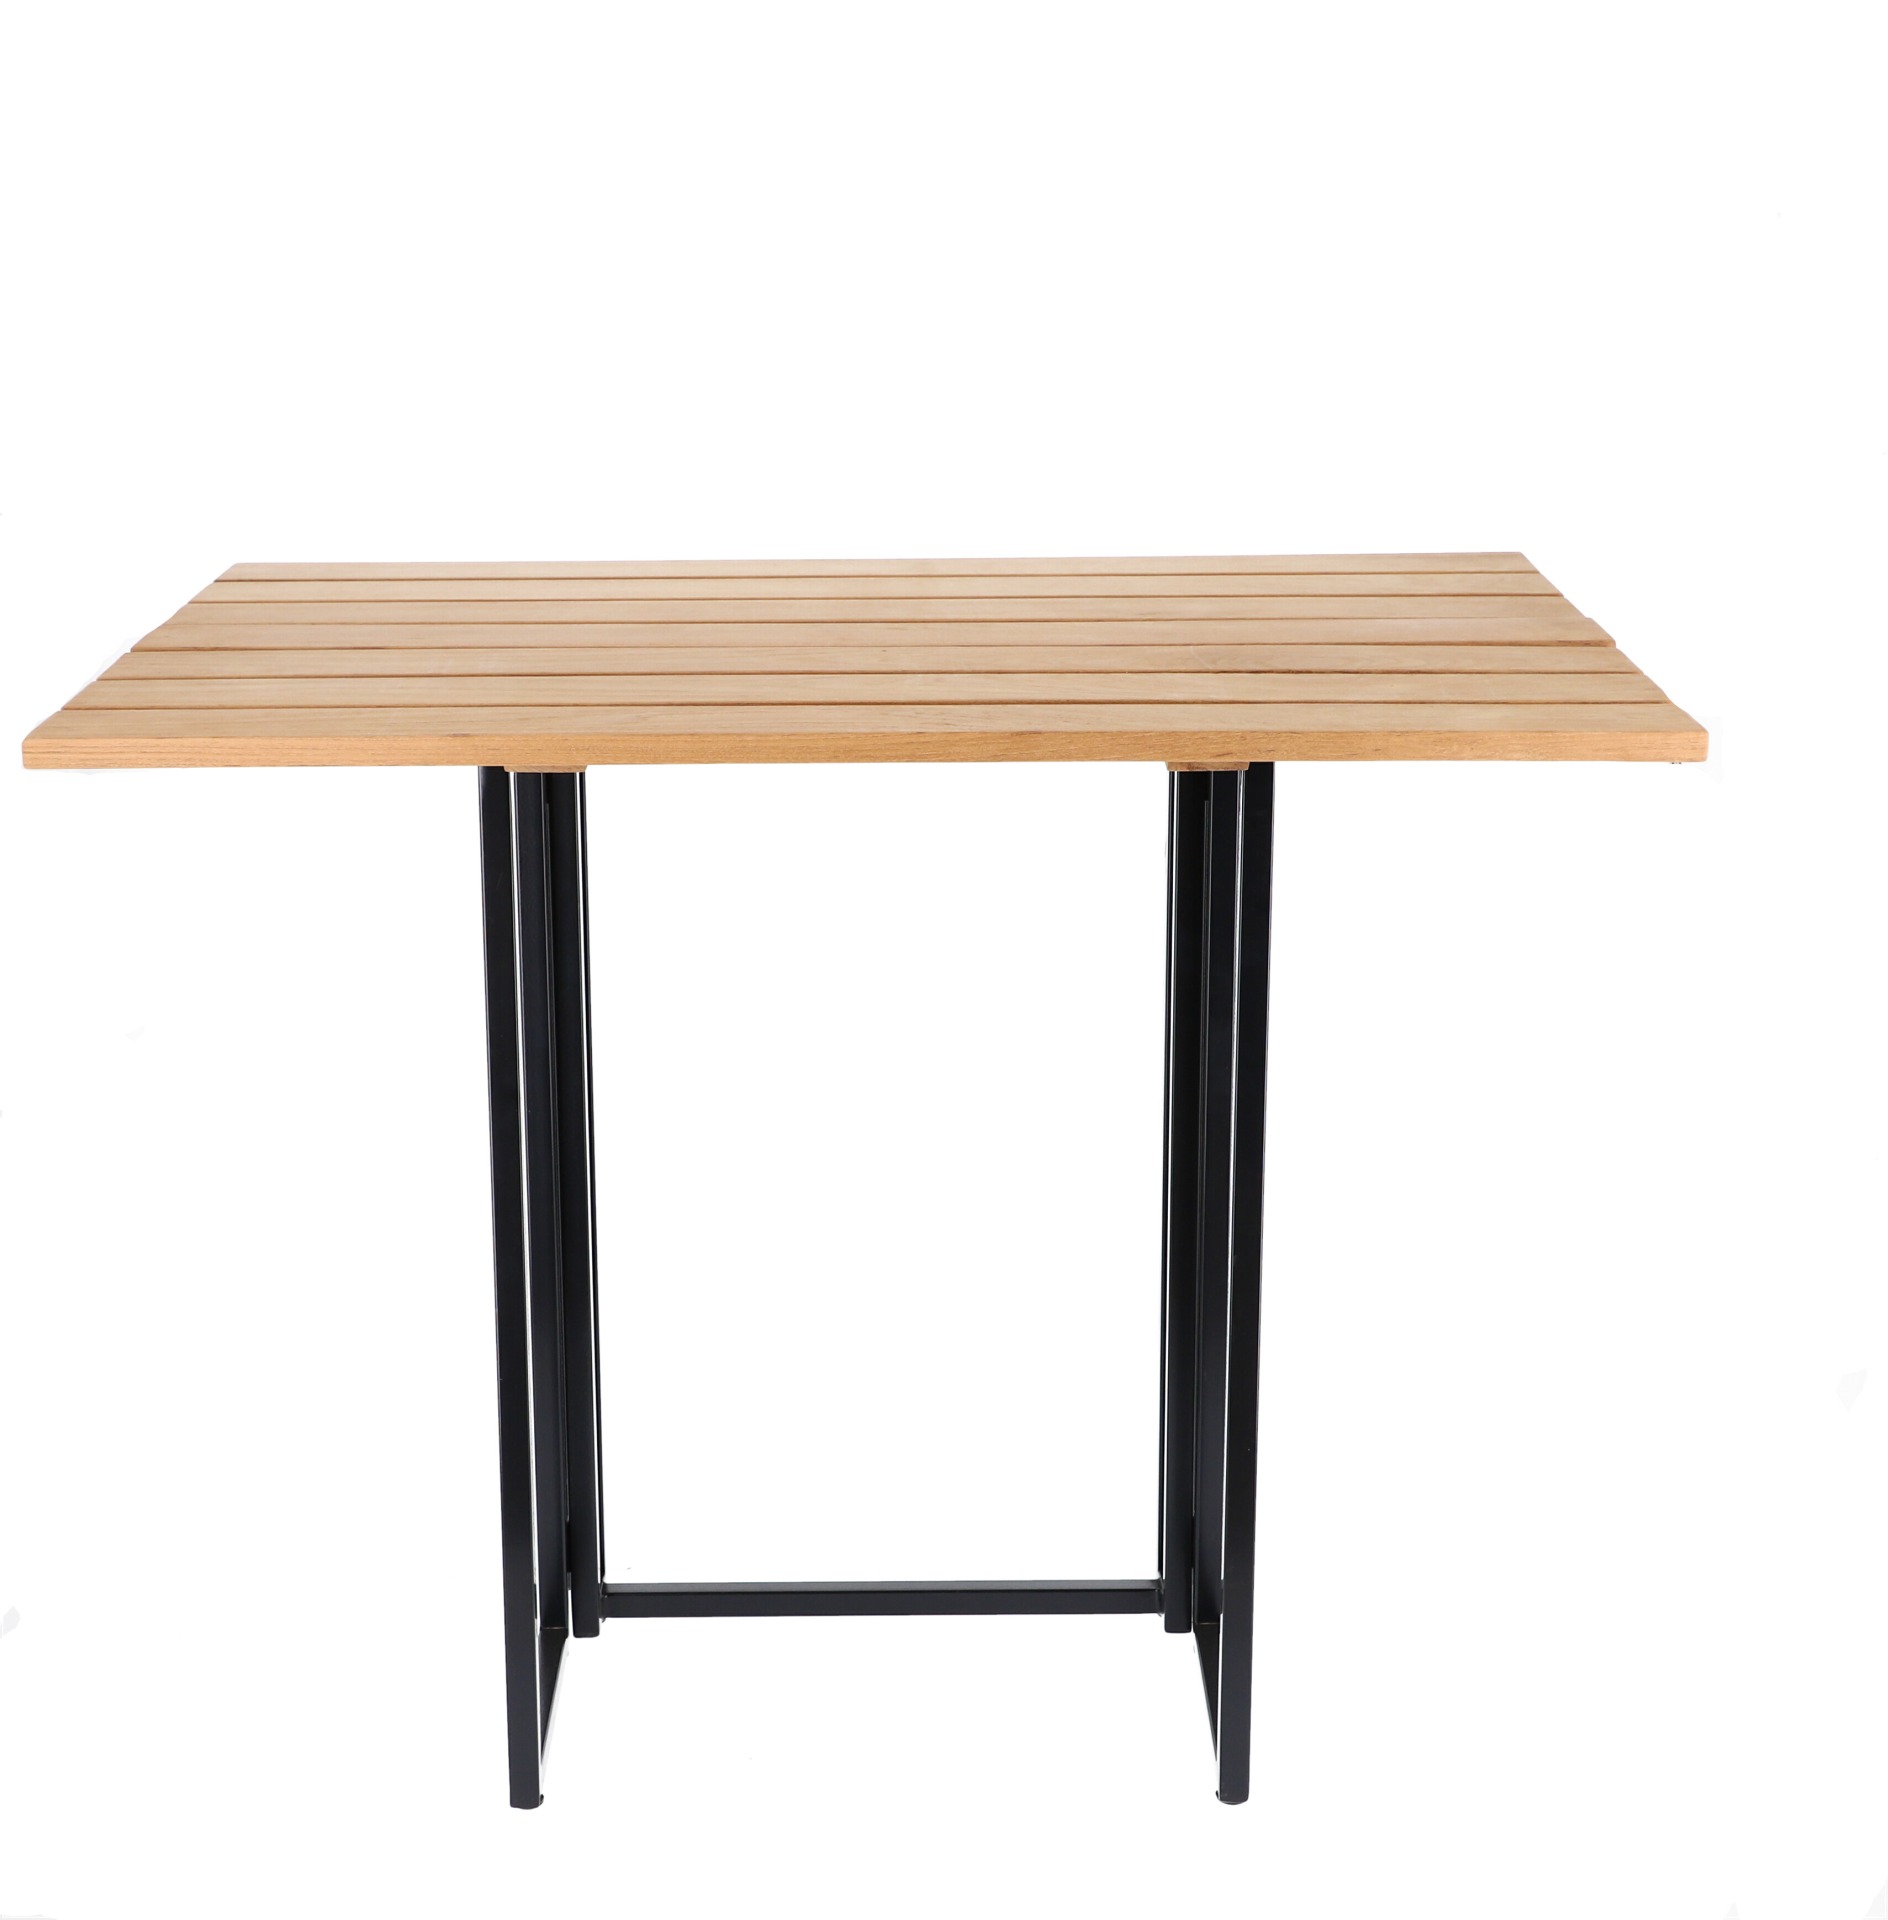 Der Klapptisch Time besitzt ein skandinavisches Design und wurde aus Teakholz gefertigt. Der Tisch hat verschieden Größen die nach belieben verändert werden können und wurde von der Marke Jan Kurtz designet.